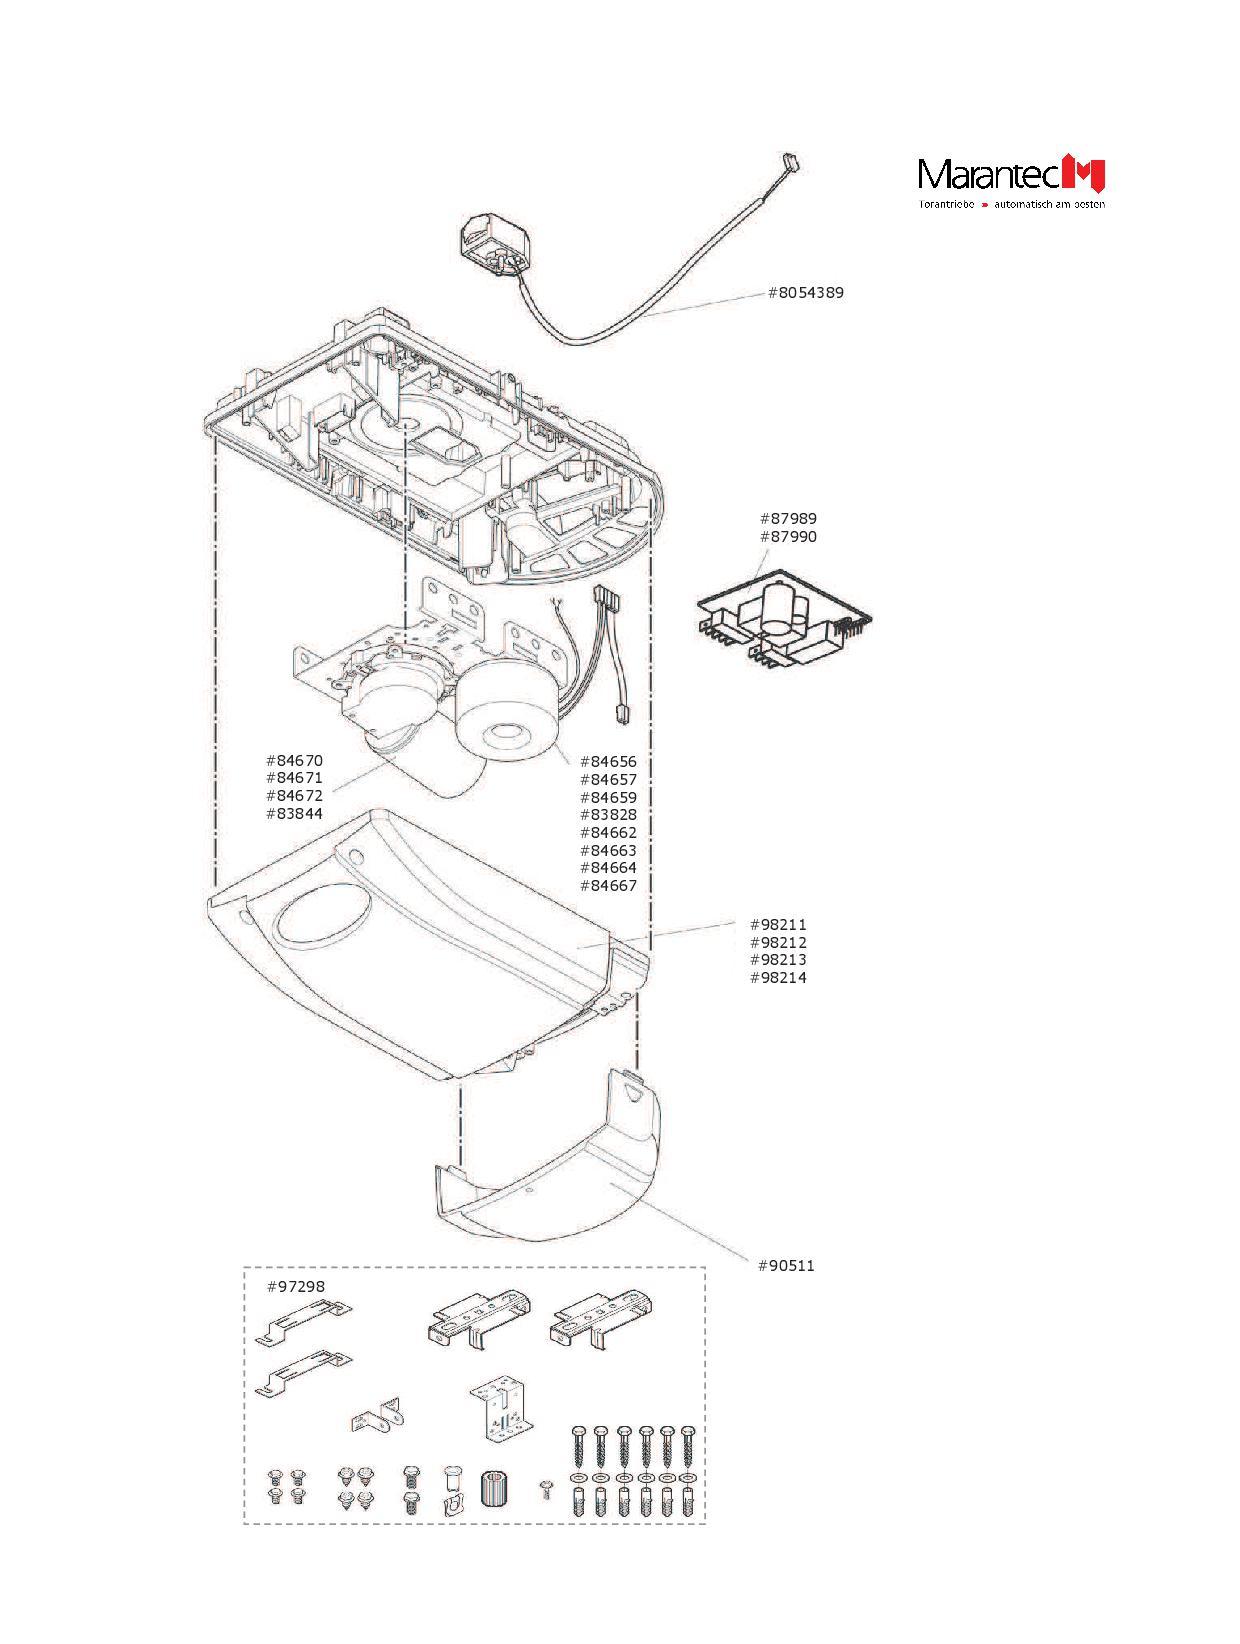 Marantec Gleichstrommotor, Artikel Nr. 84671 für  Garagentorantrieb Comfort 250.2